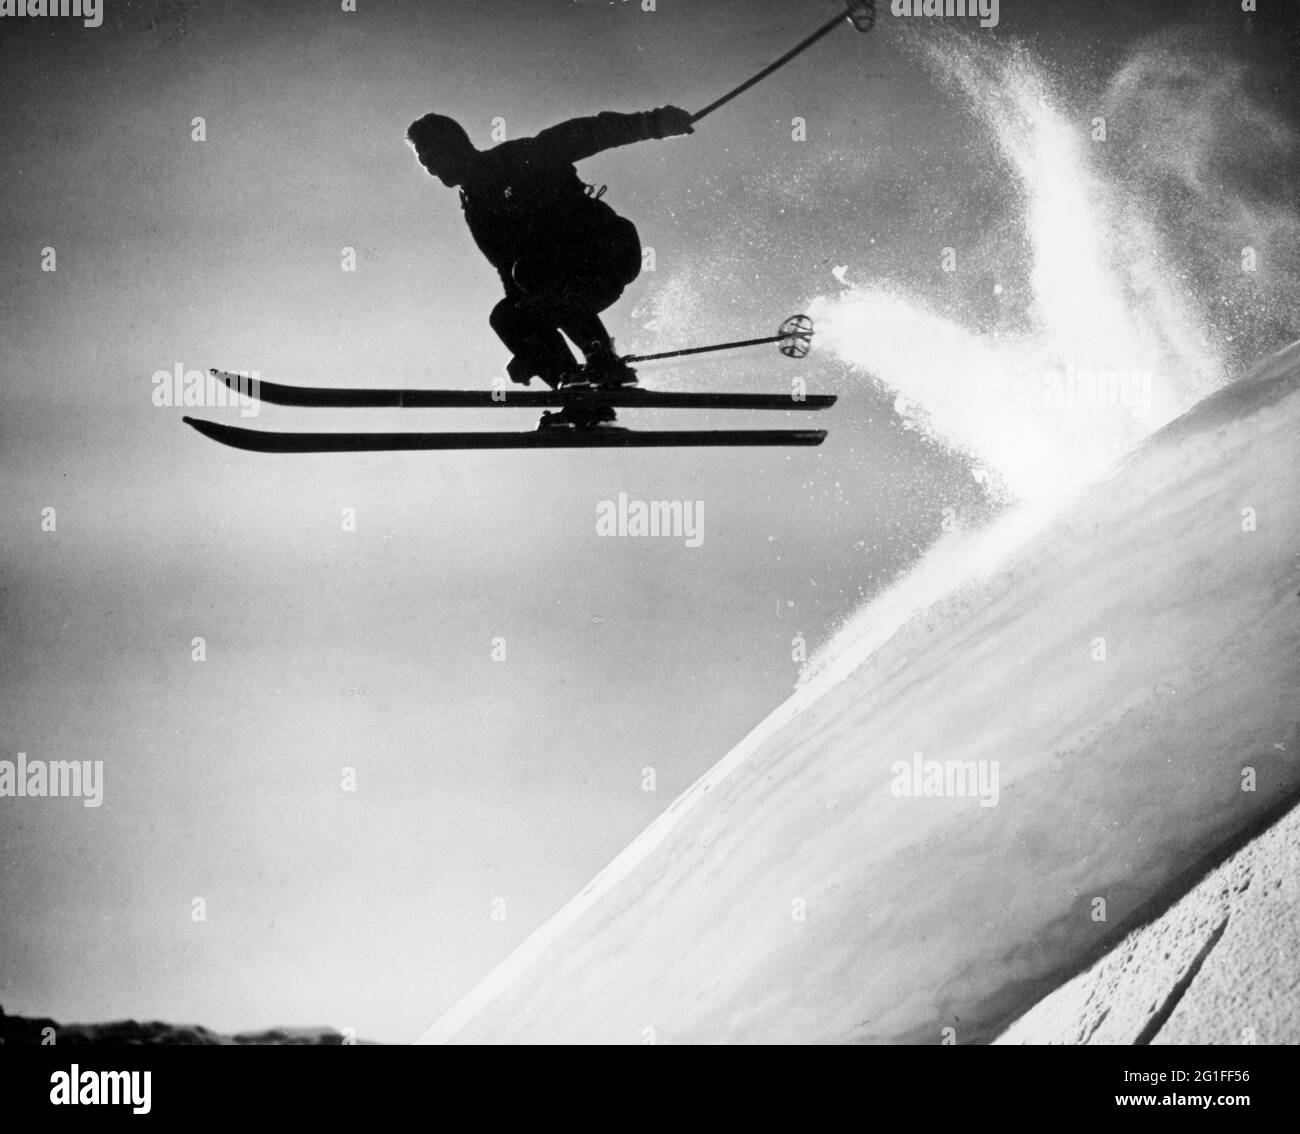 Sport, sport invernali, sci alpino, sciatore durante il salto su un pendio ripido, retroilluminazione, 60, DIRITTI-AGGIUNTIVI-INFORMAZIONI-AUTORIZZAZIONE-NON-DISPONIBILI Foto Stock